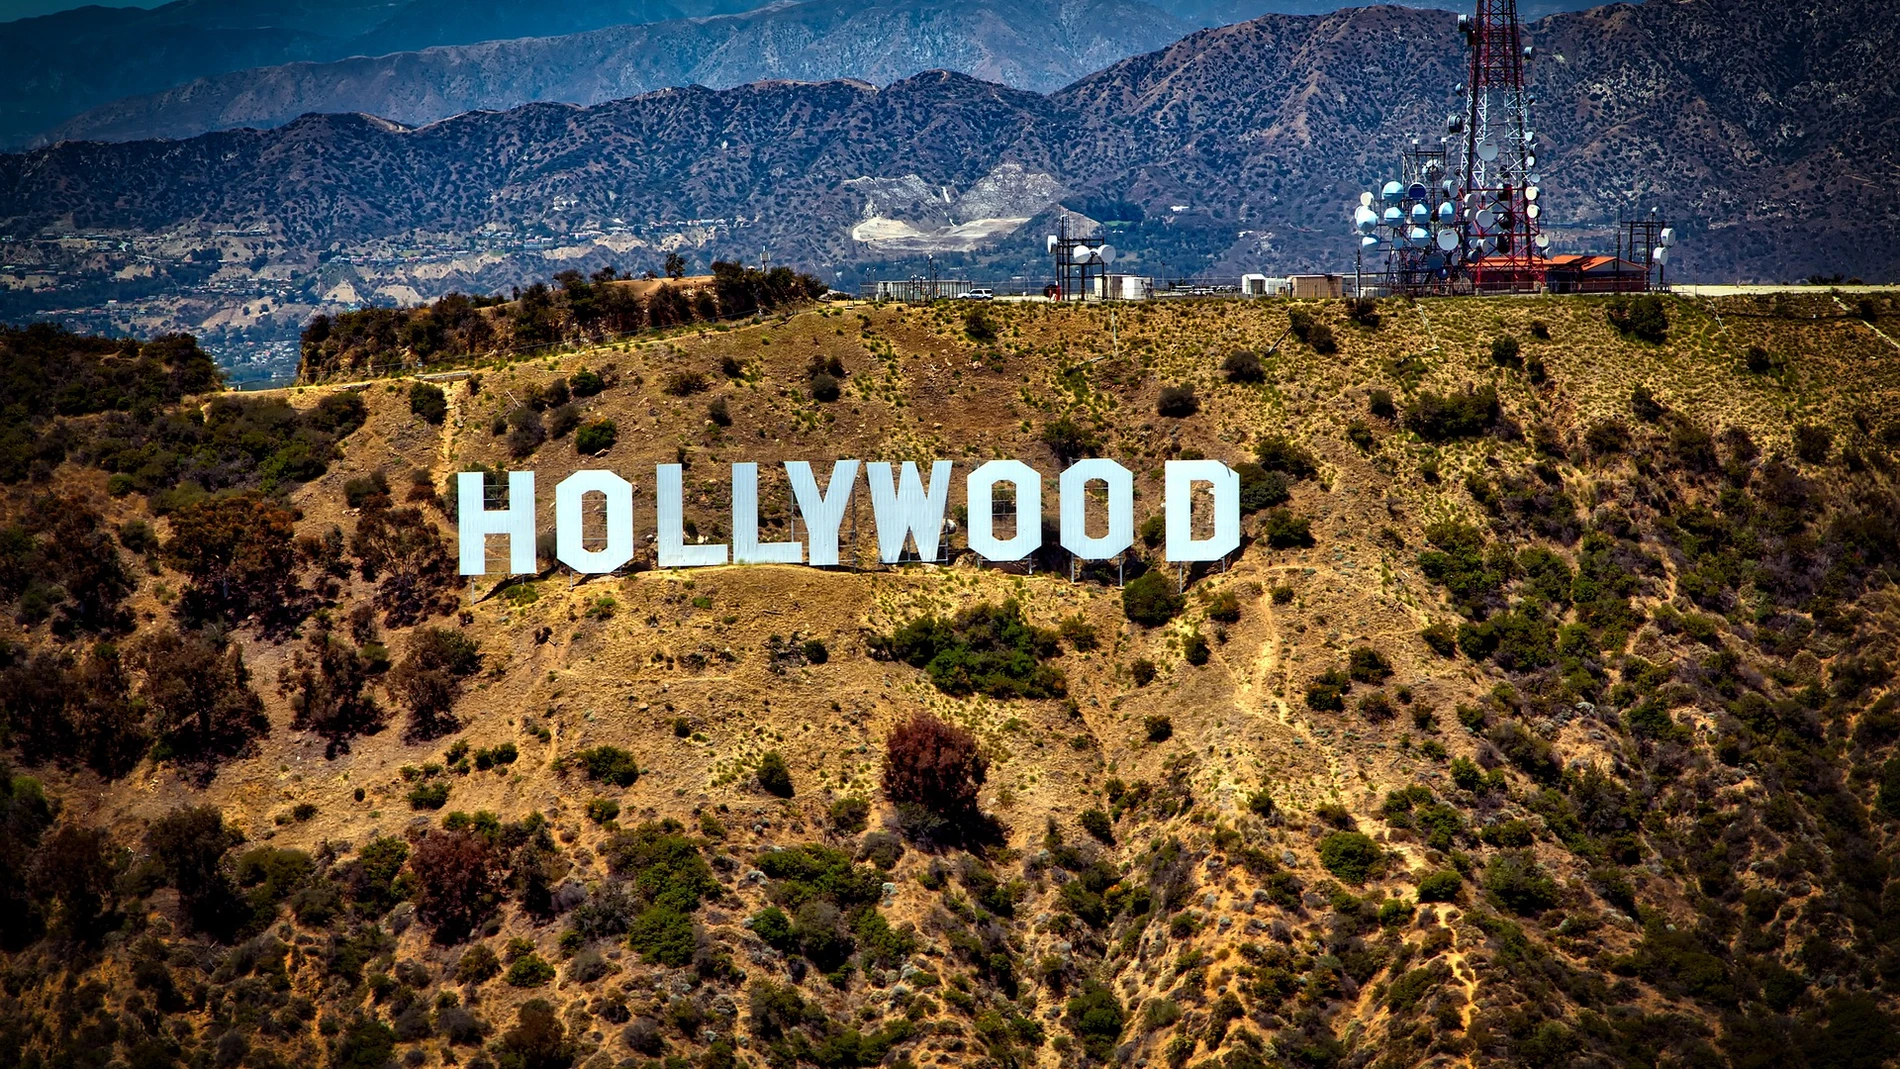 Hollywood convoca una huelga que paralizaría toda la industria cinematográfica